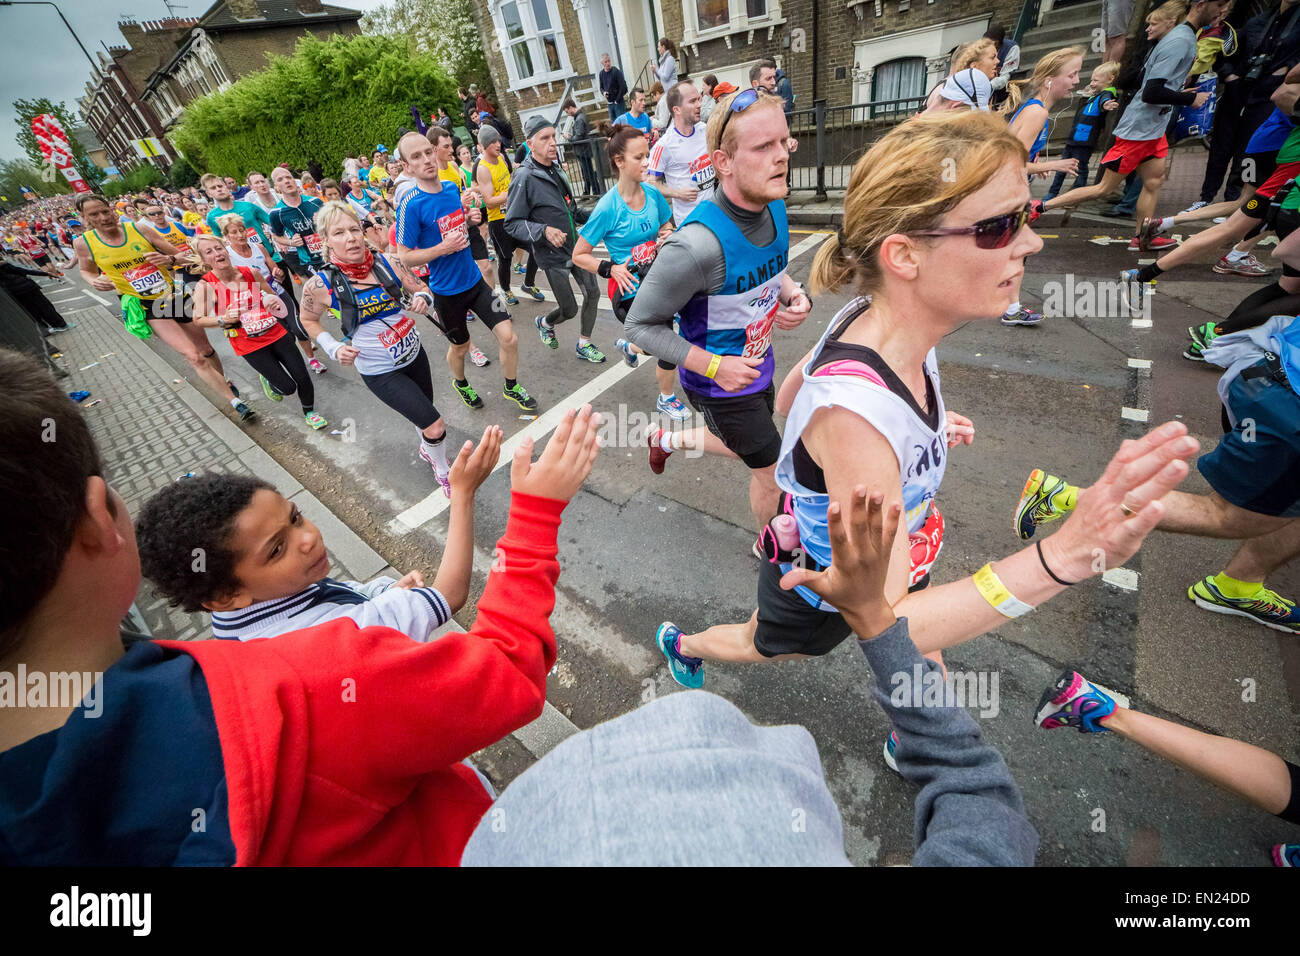 Londres, Royaume-Uni. 26 avril, 2015. 35e Marathon de Londres passe par Deptford dans le sud-est de Londres. Crédit : Guy Josse/Alamy Live News Banque D'Images